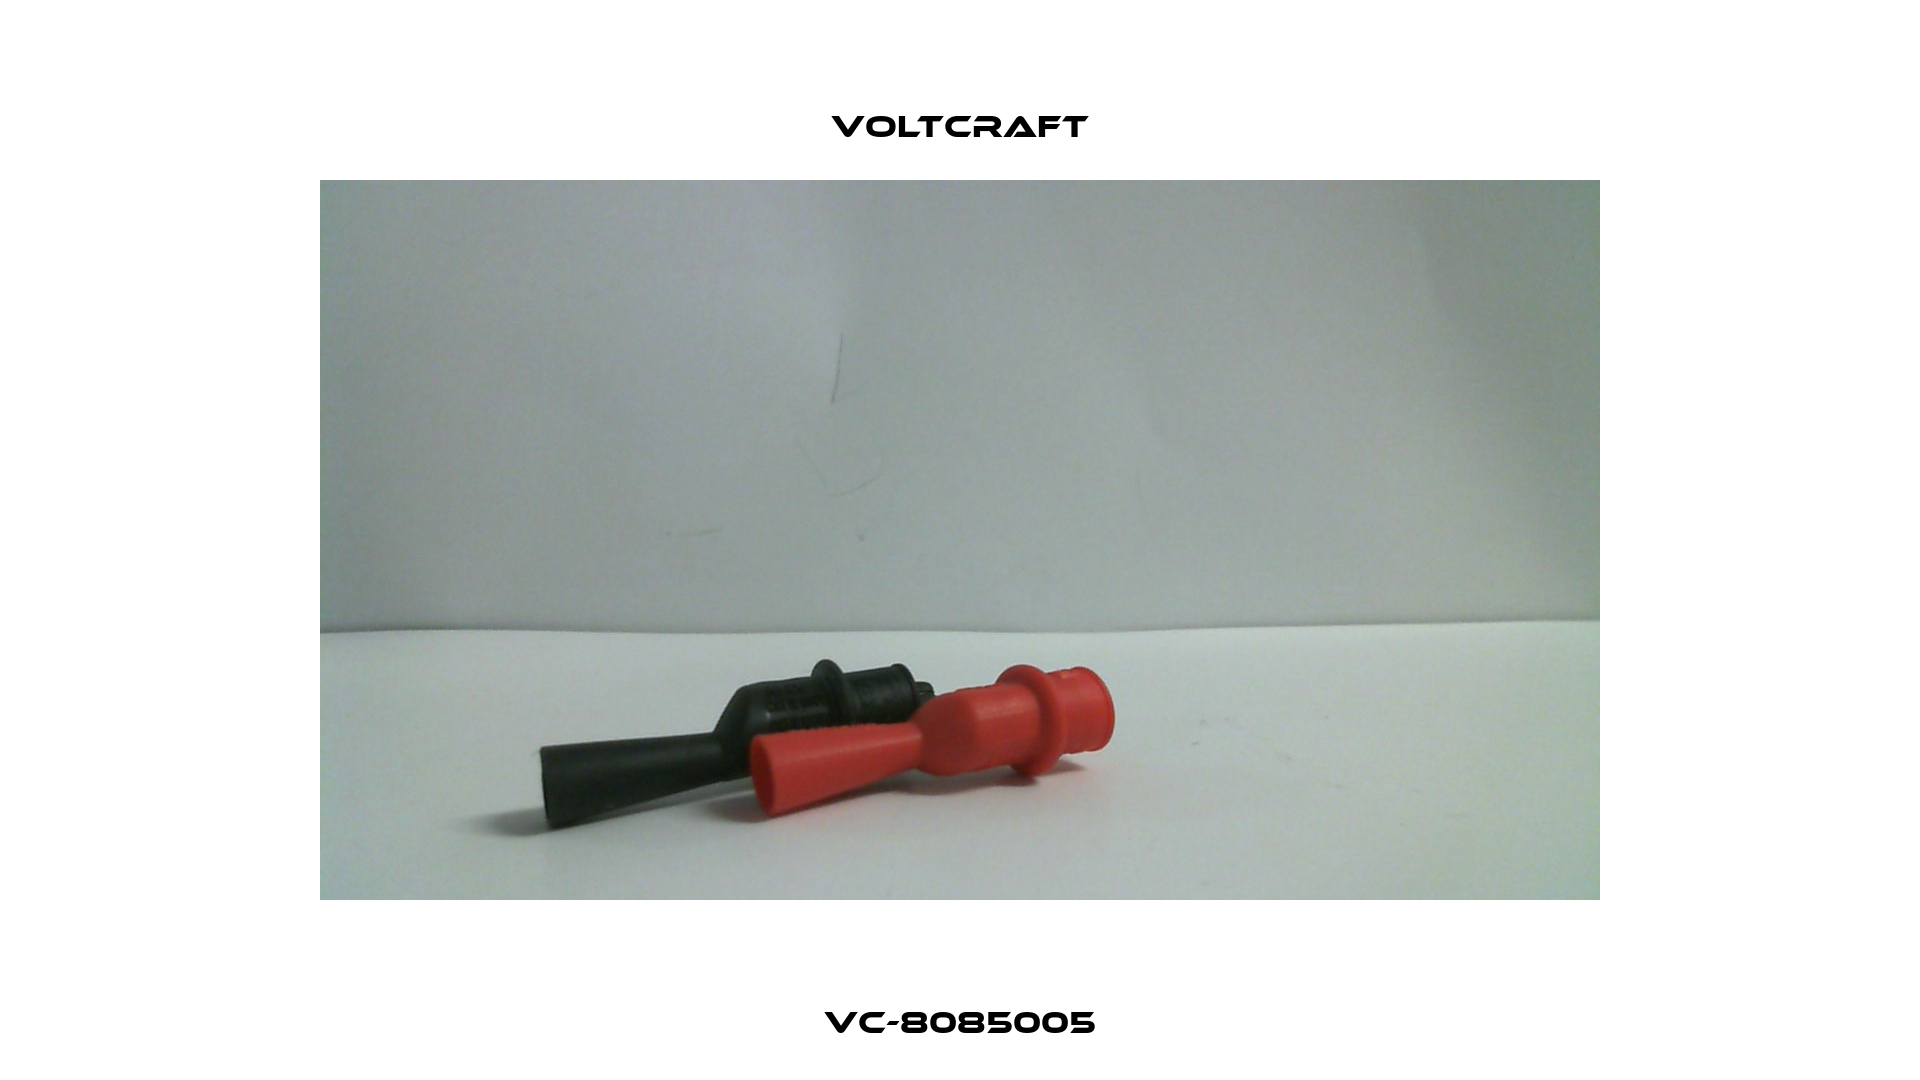 VC-8085005 Voltcraft